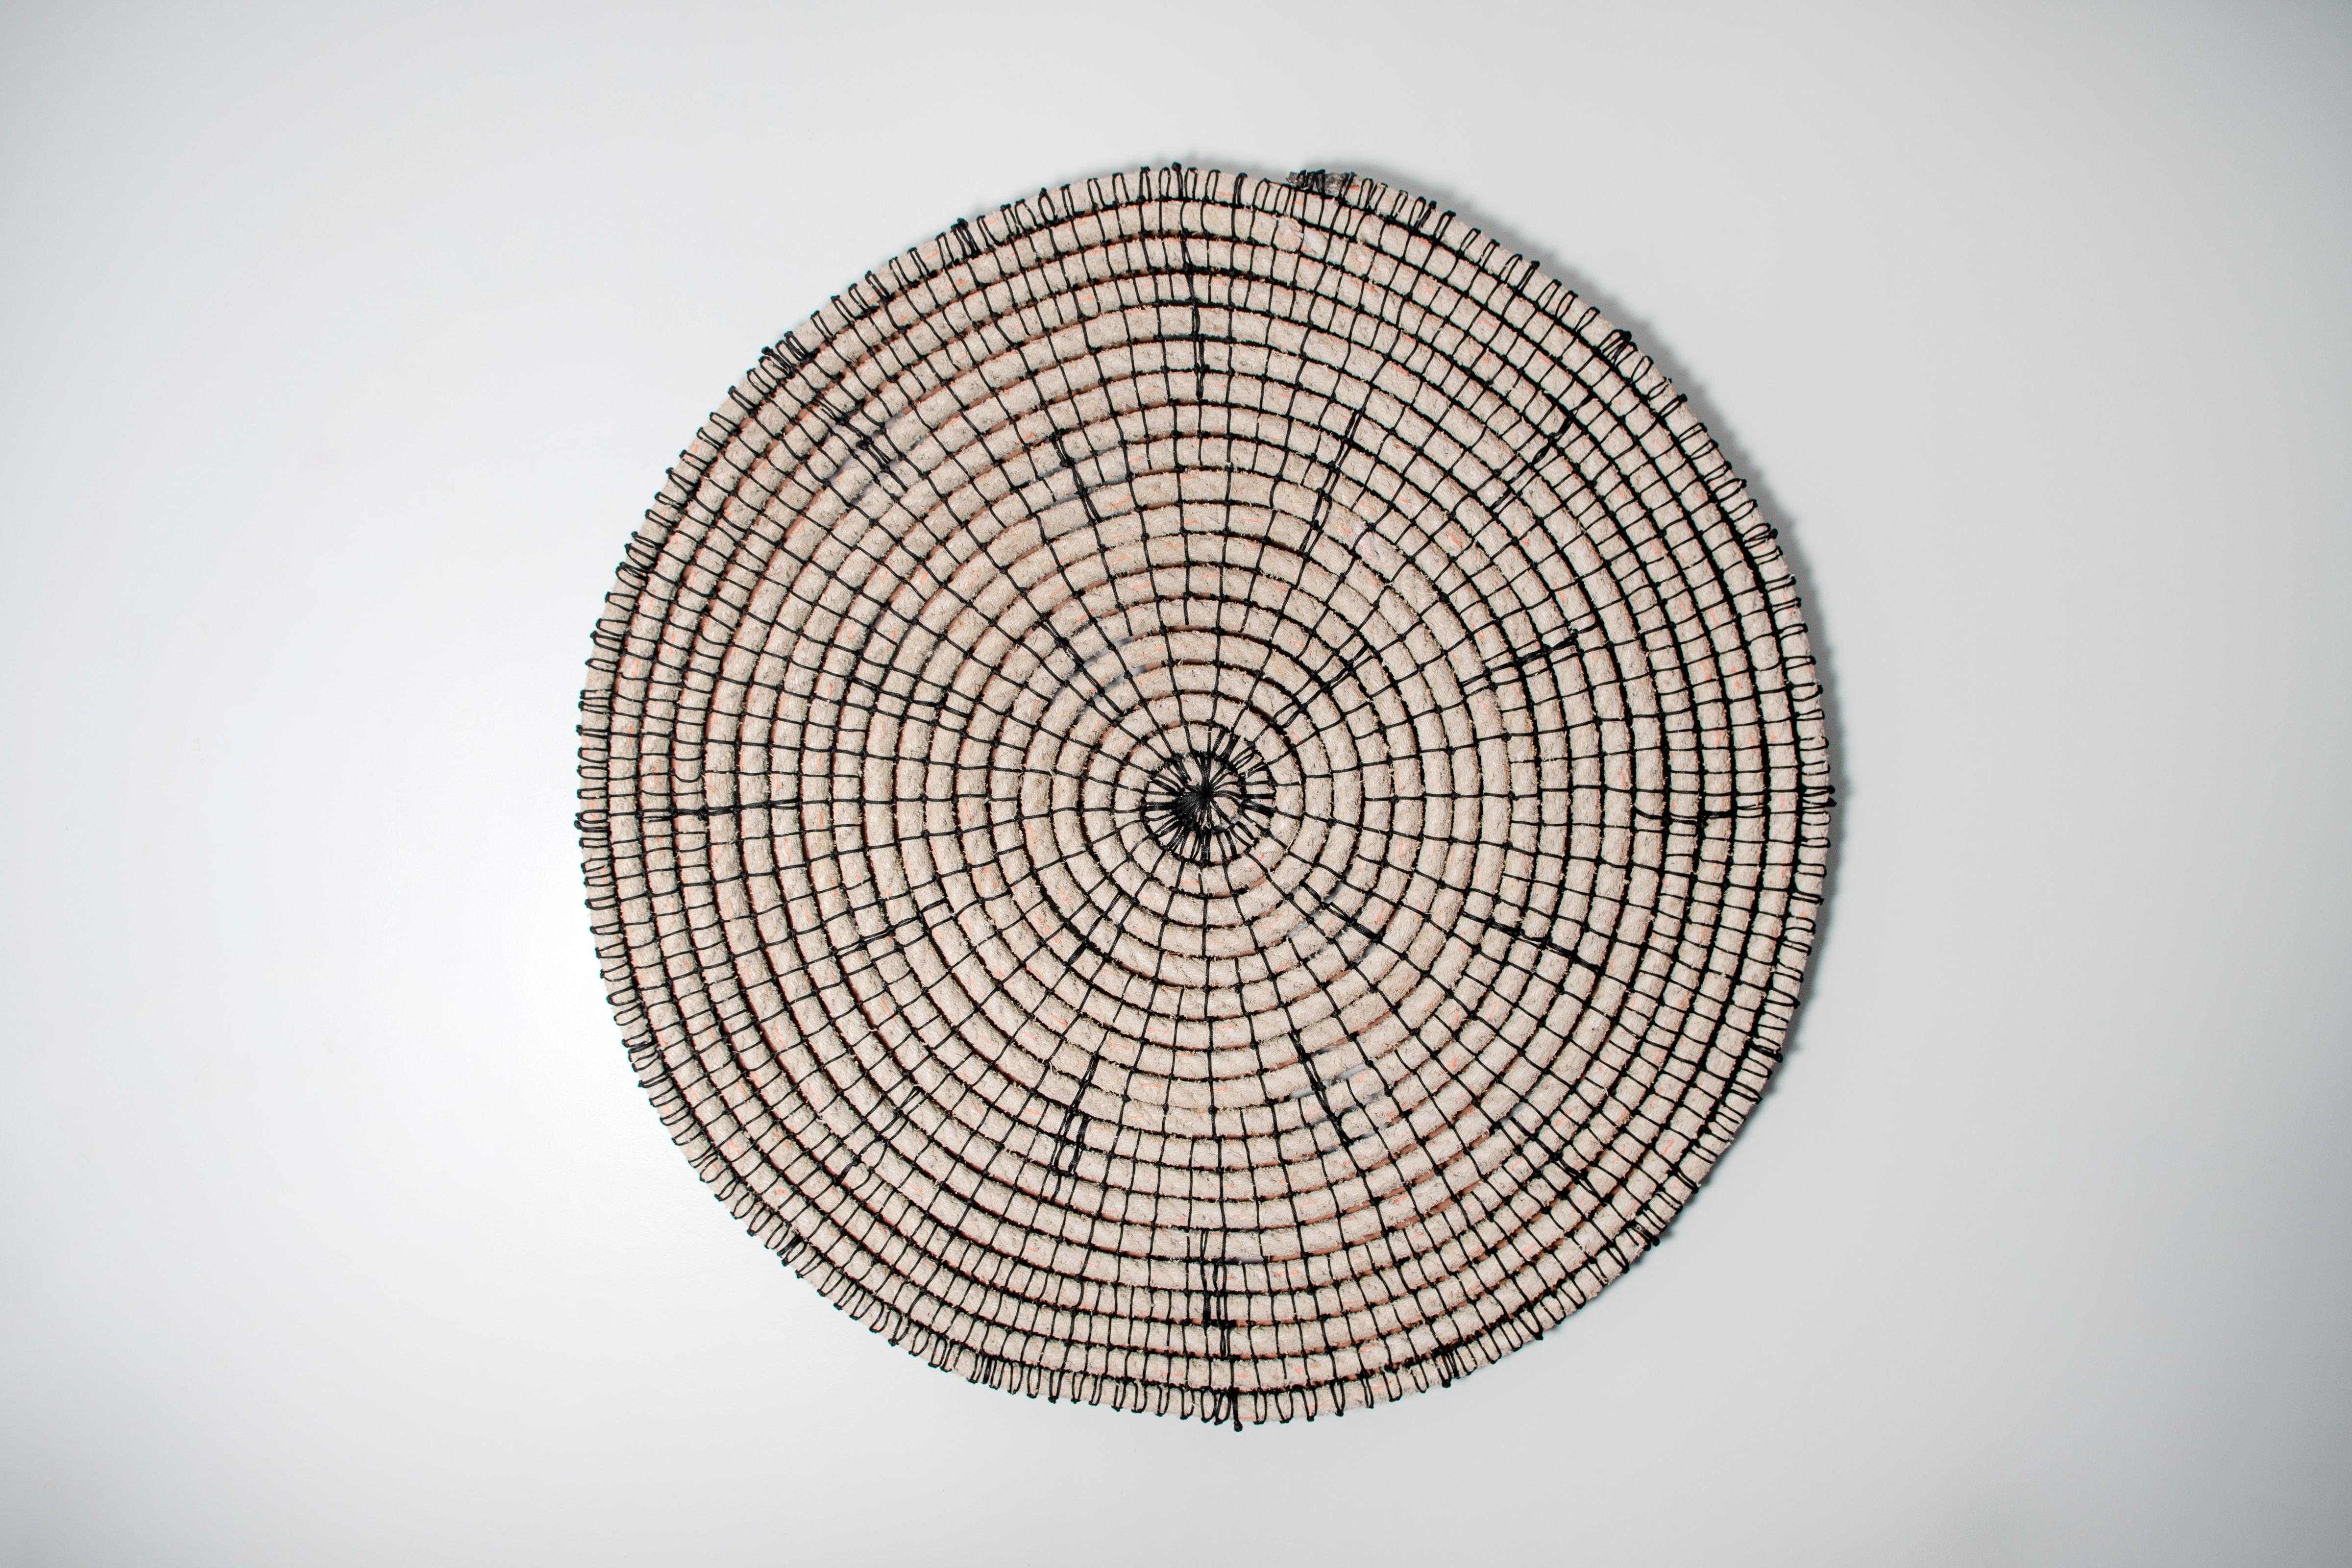 Baskets reimagined 1, Laimi Mbangula, rope, acrylic string, wooden base - Art by Laimi Mbangula 